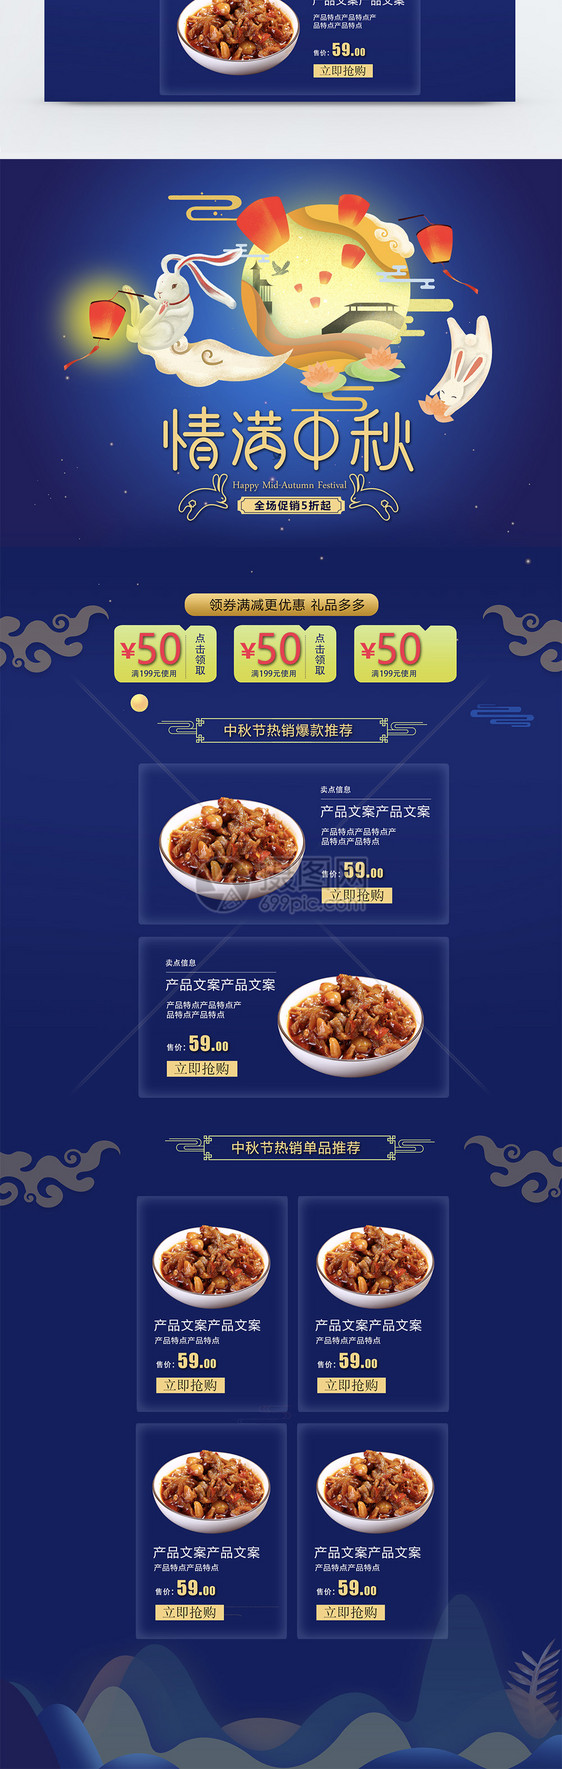 中秋节美食首页PSD模板图片